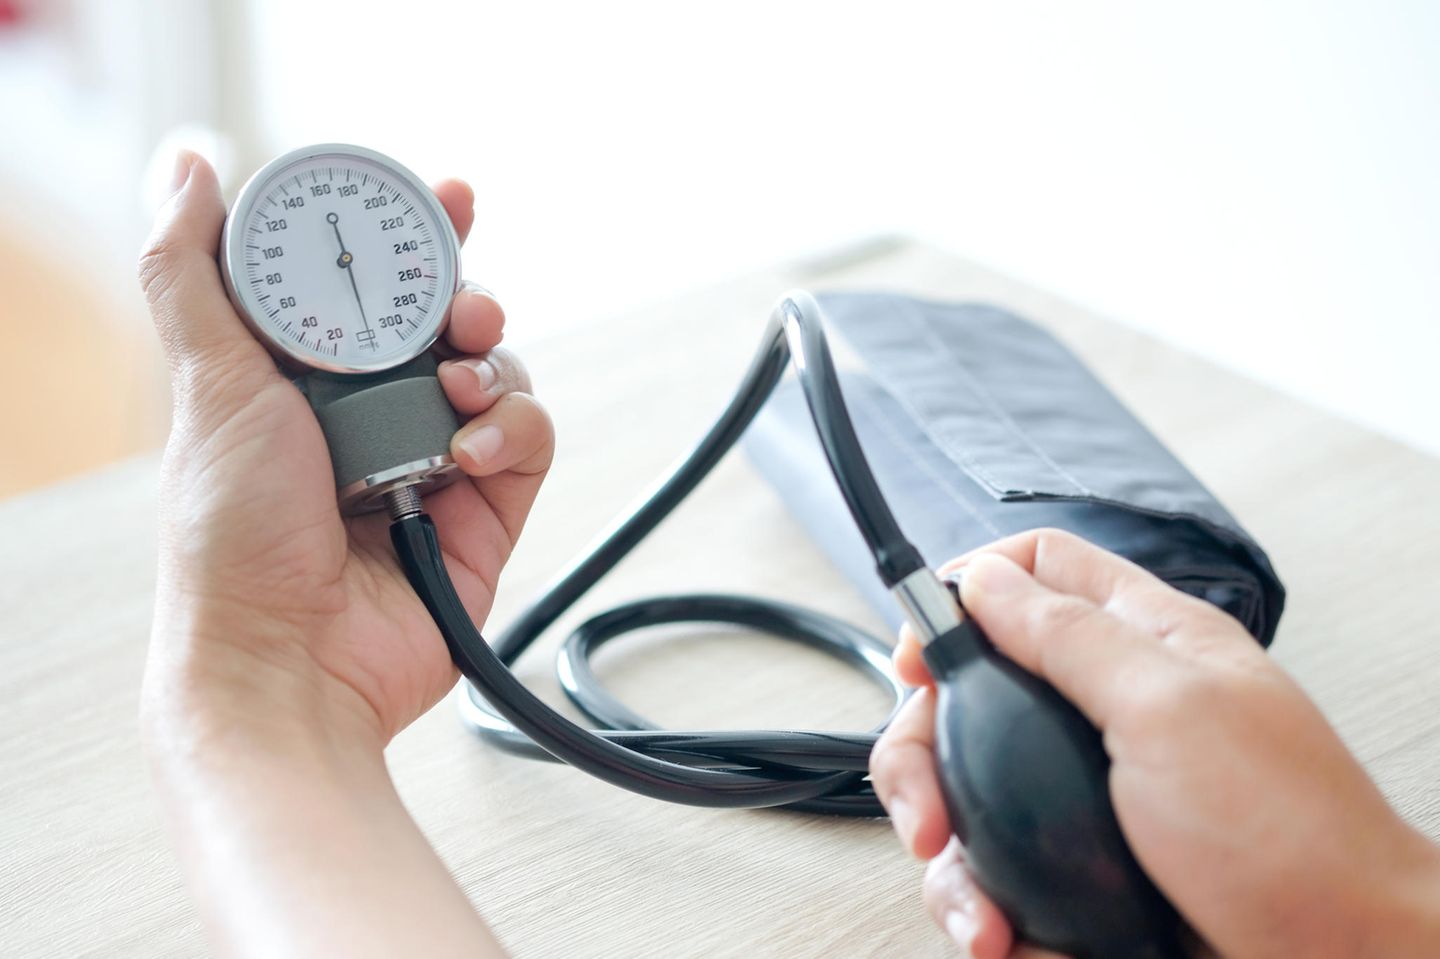 Bluthochdruck-Behandlung: Das hat sich geändert: Blutdruckmessgerät